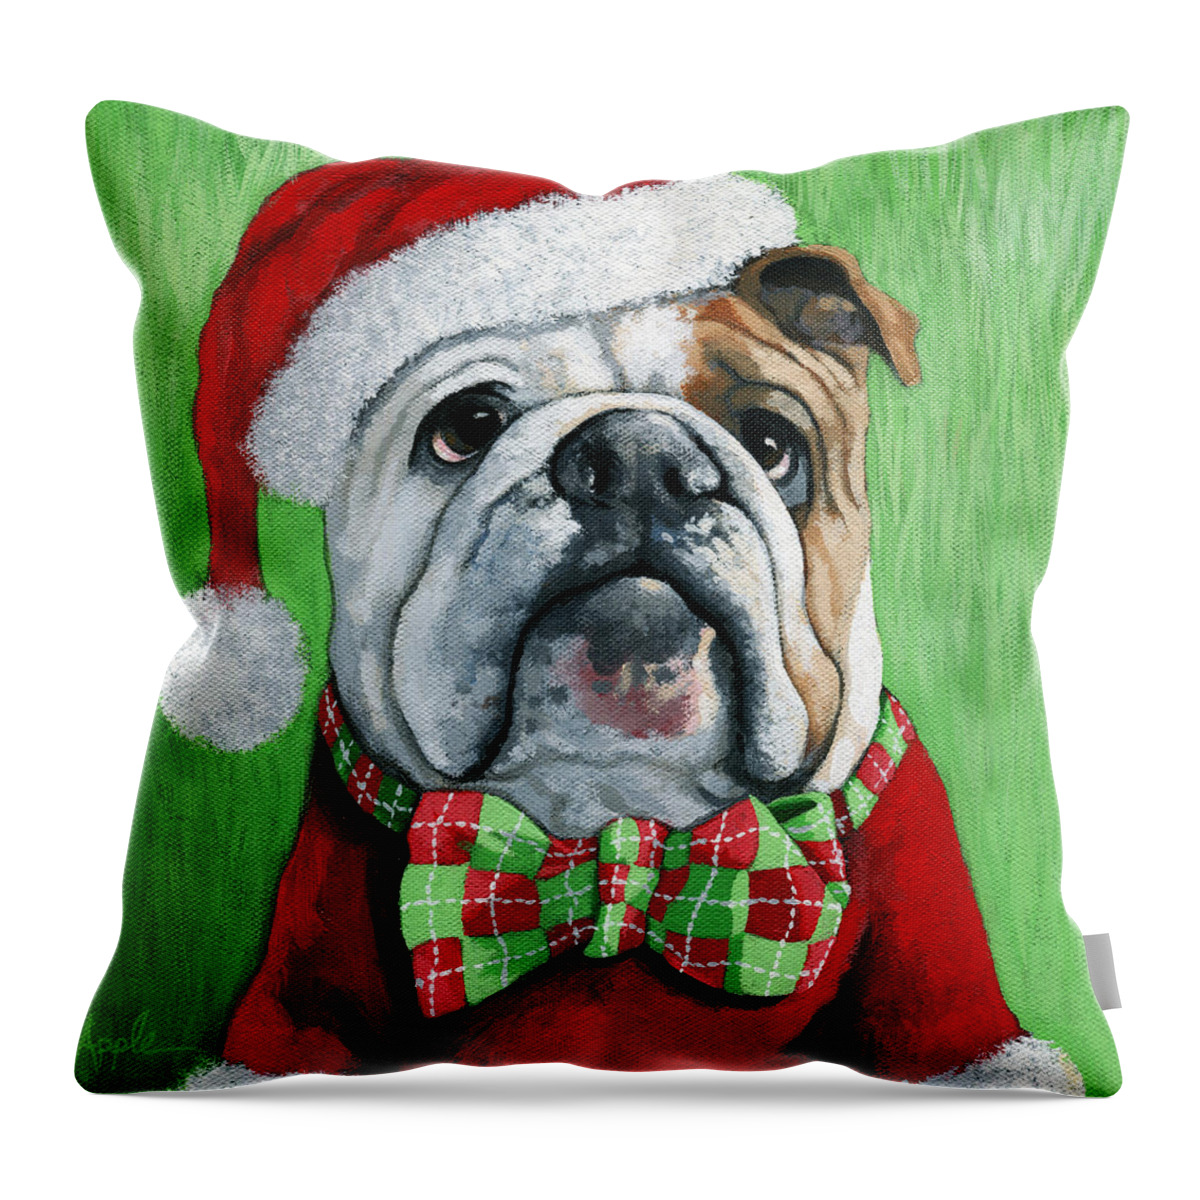 Santa Dog Throw Pillow featuring the painting Holiday Cheer -English Bulldog Santa dog painting by Linda Apple